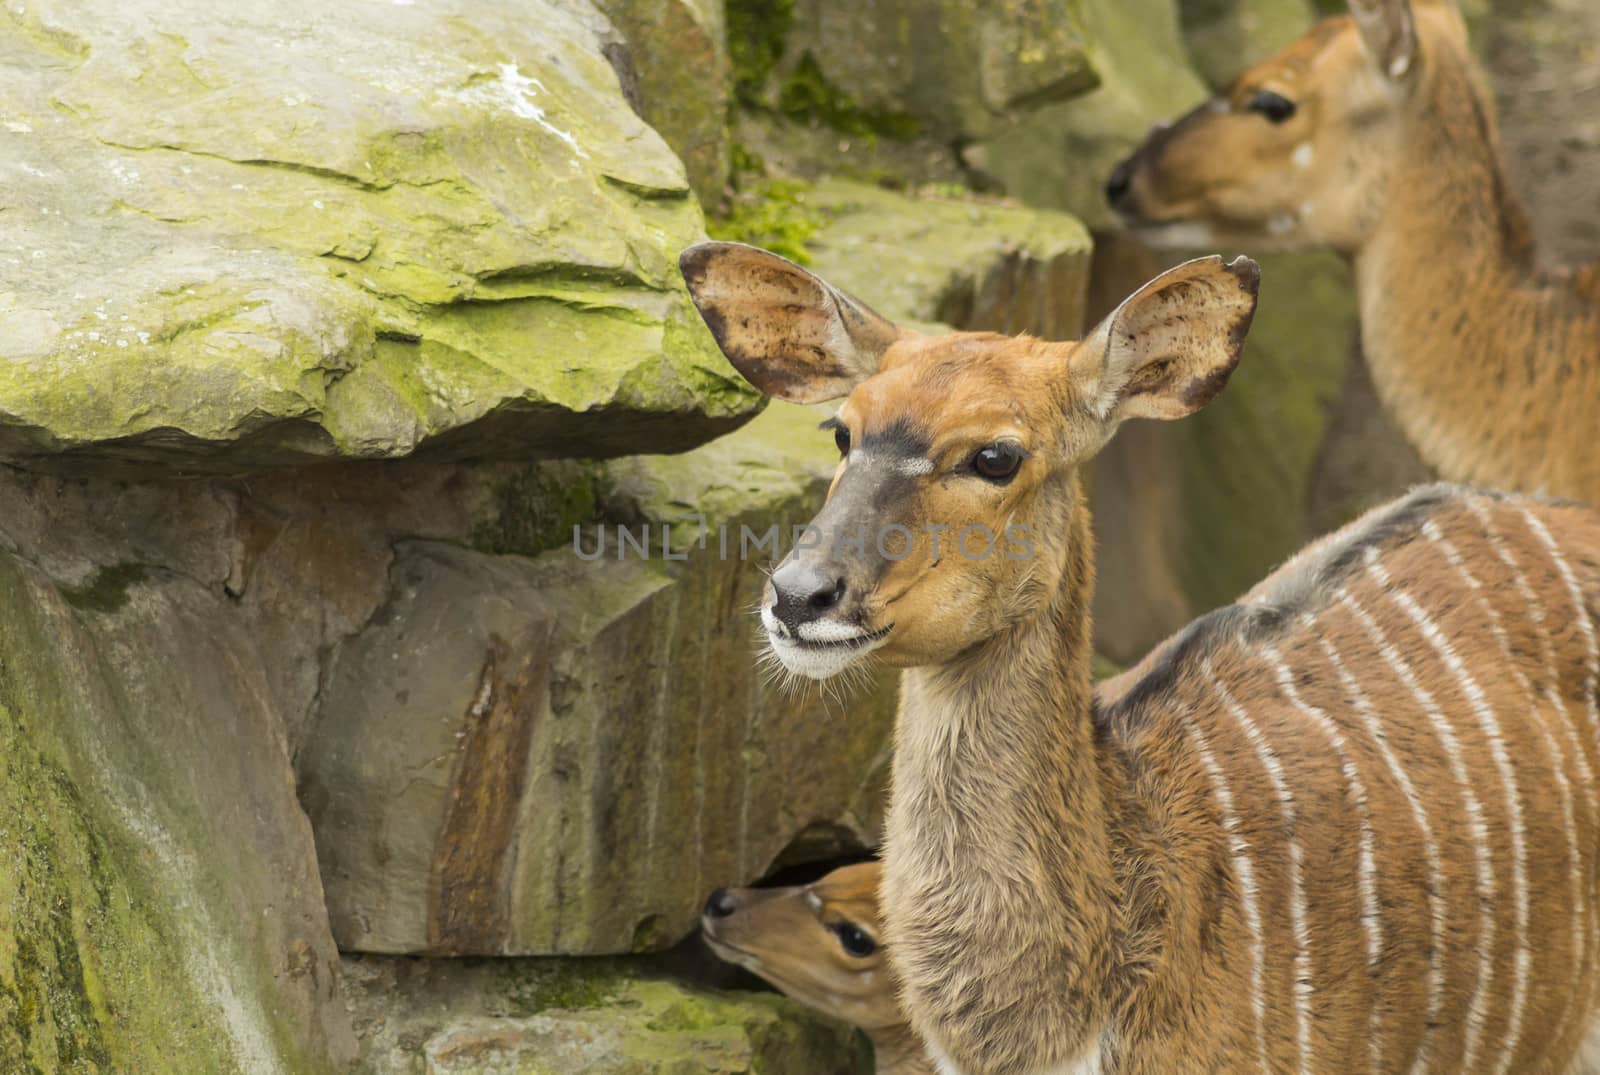 Elk or deer in Berlin Zoo in Europe.